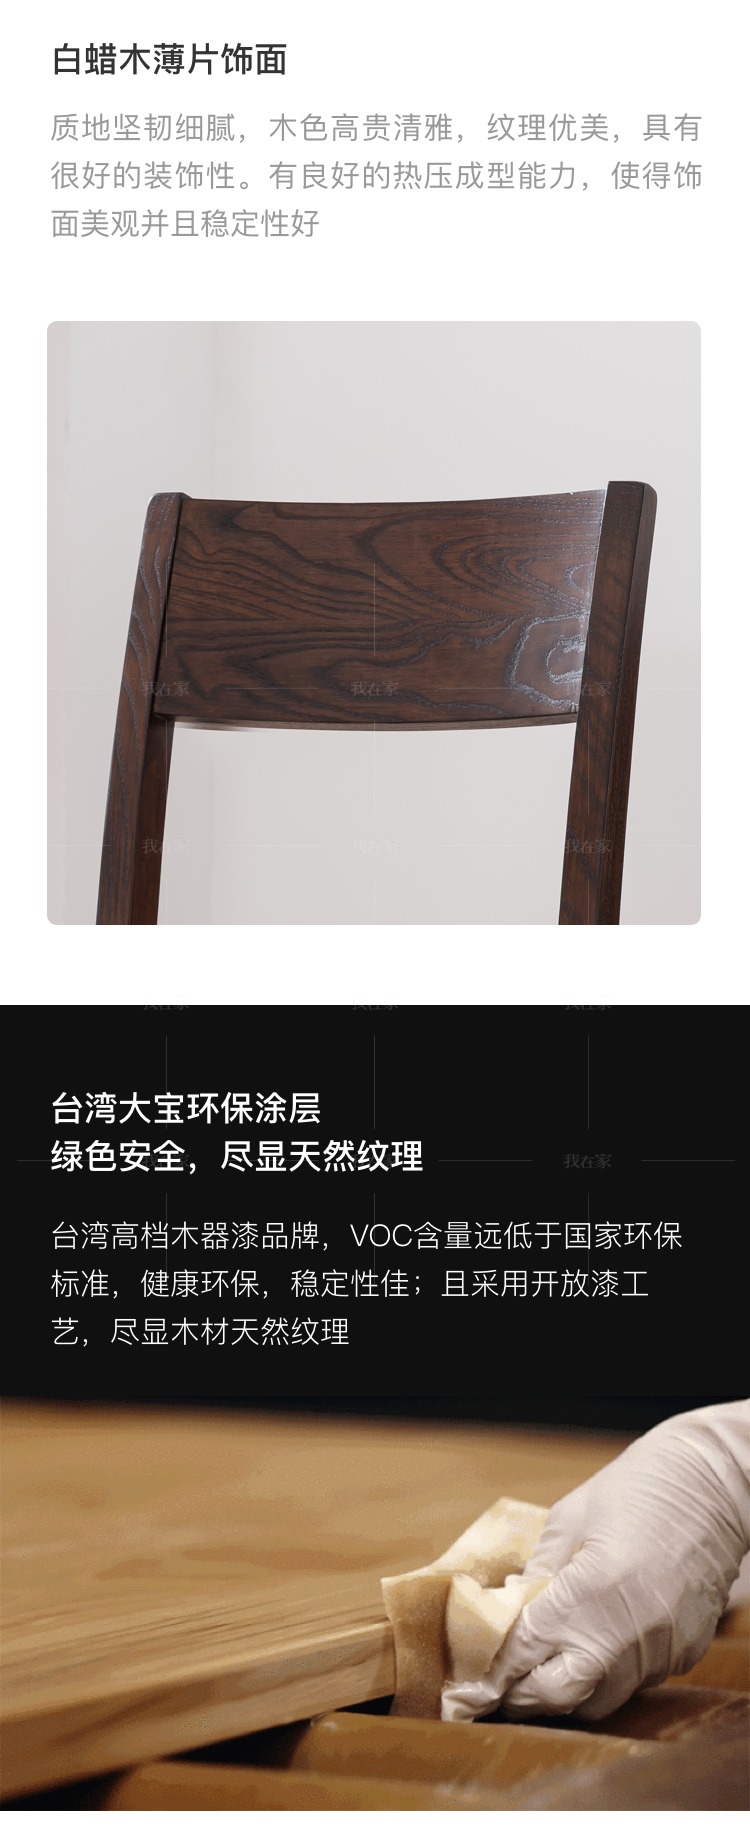 简约美式风格密苏里餐椅的家具详细介绍